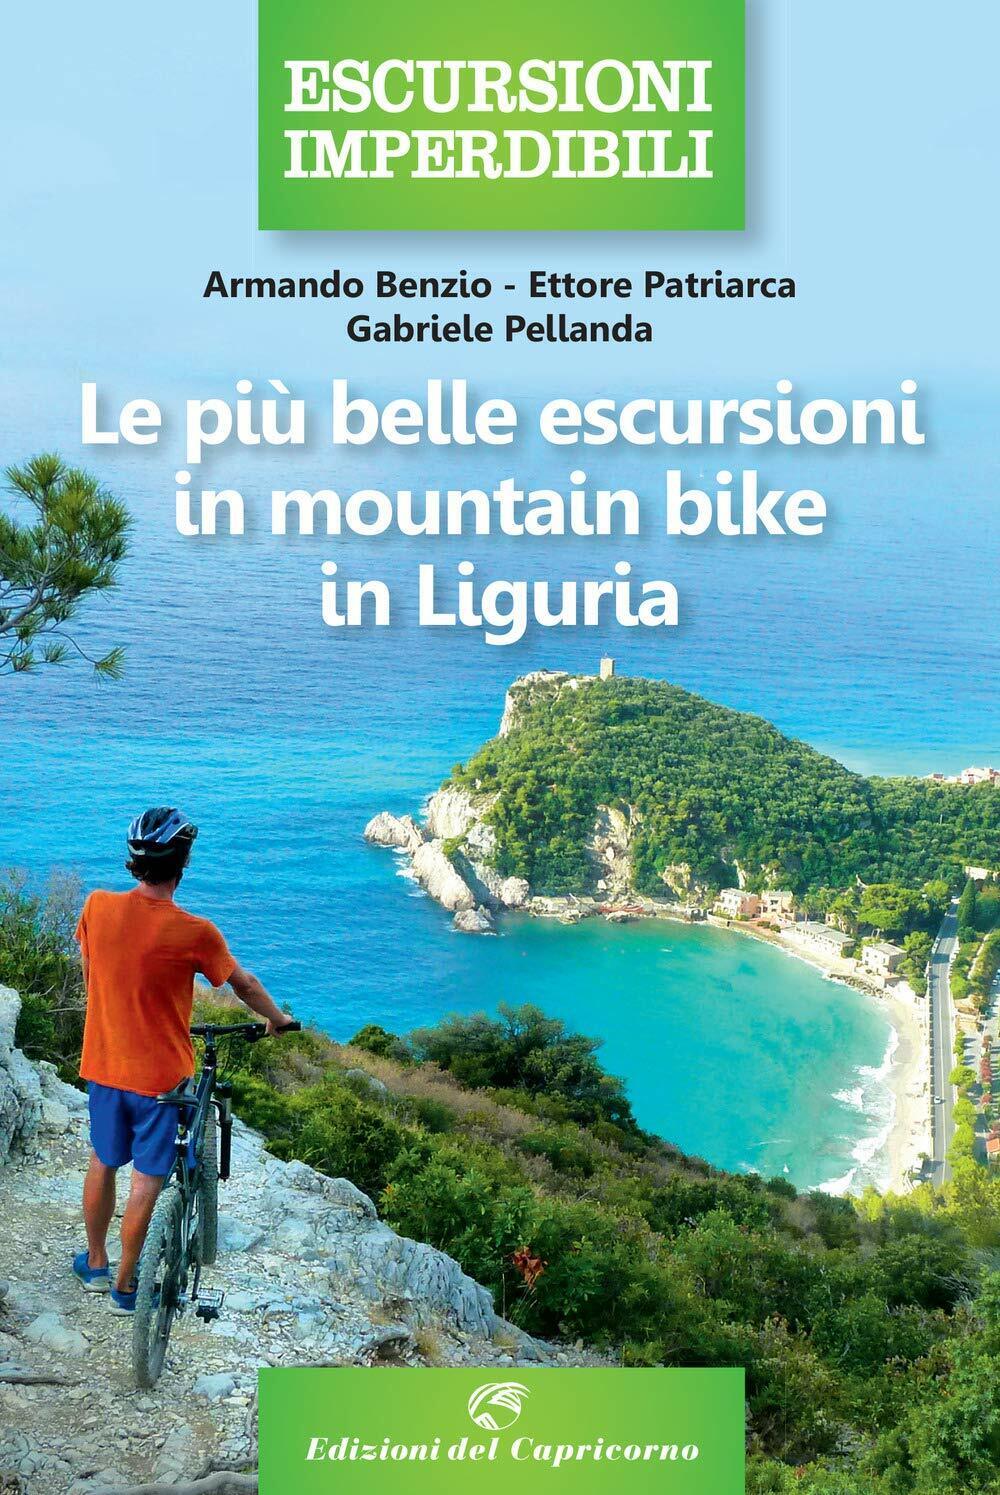 Le pi? belle escursioni in mountain bike in Liguria-Edizioni del Capricorno,2020